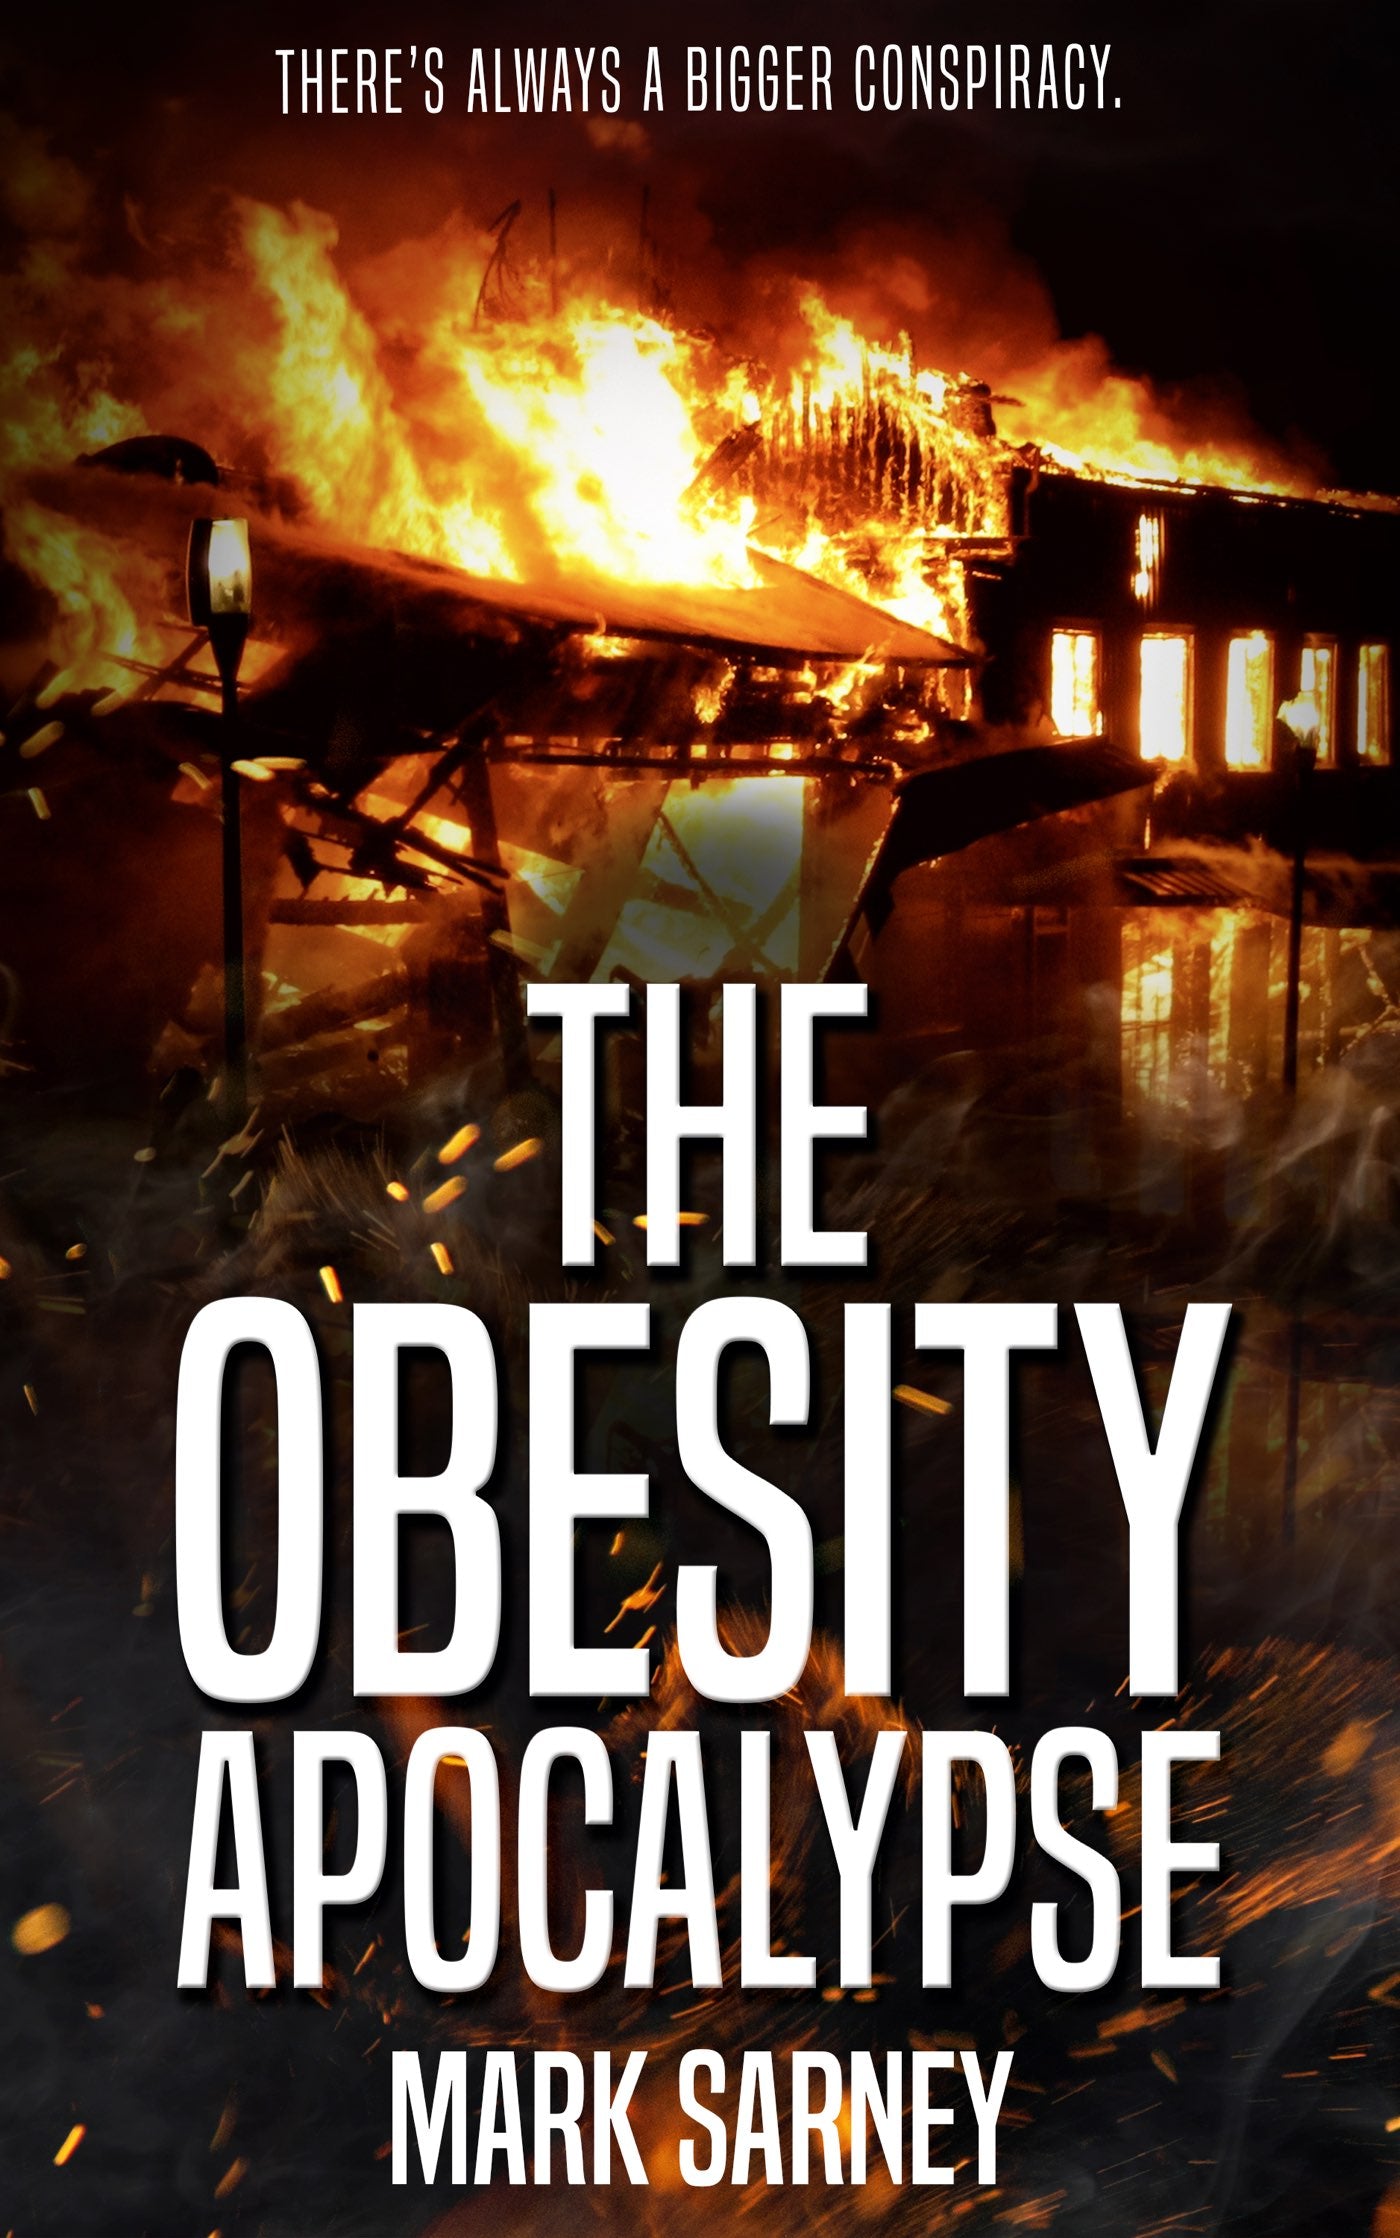 The Obesity Apocalypse